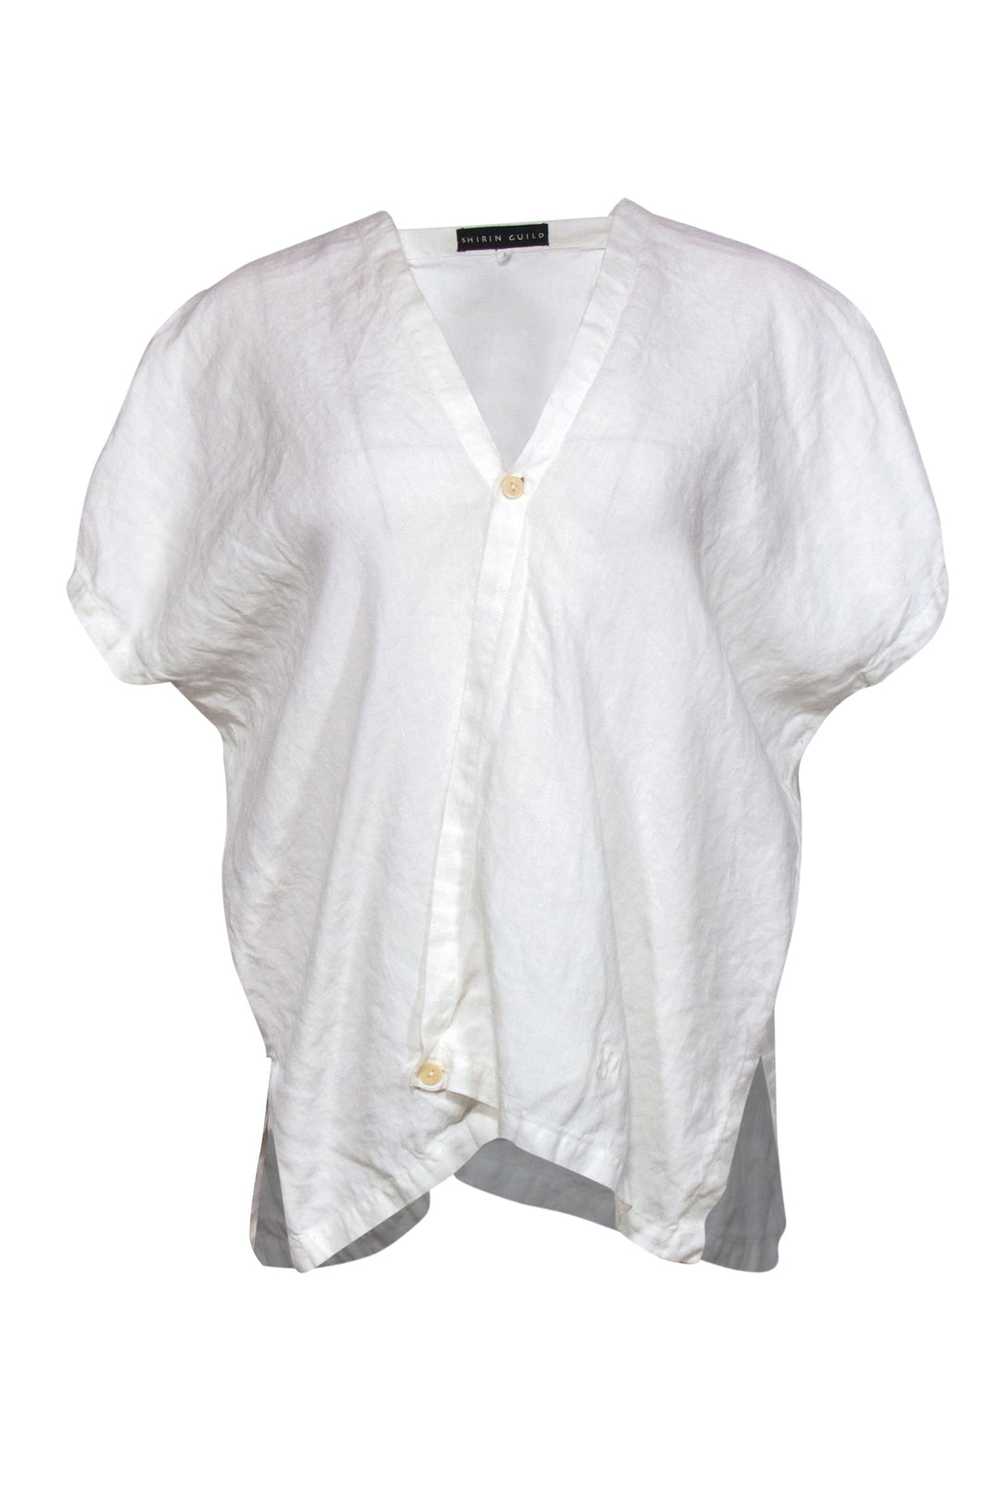 Shirin Guild - White Linen Draped Asymmetric Blou… - image 1